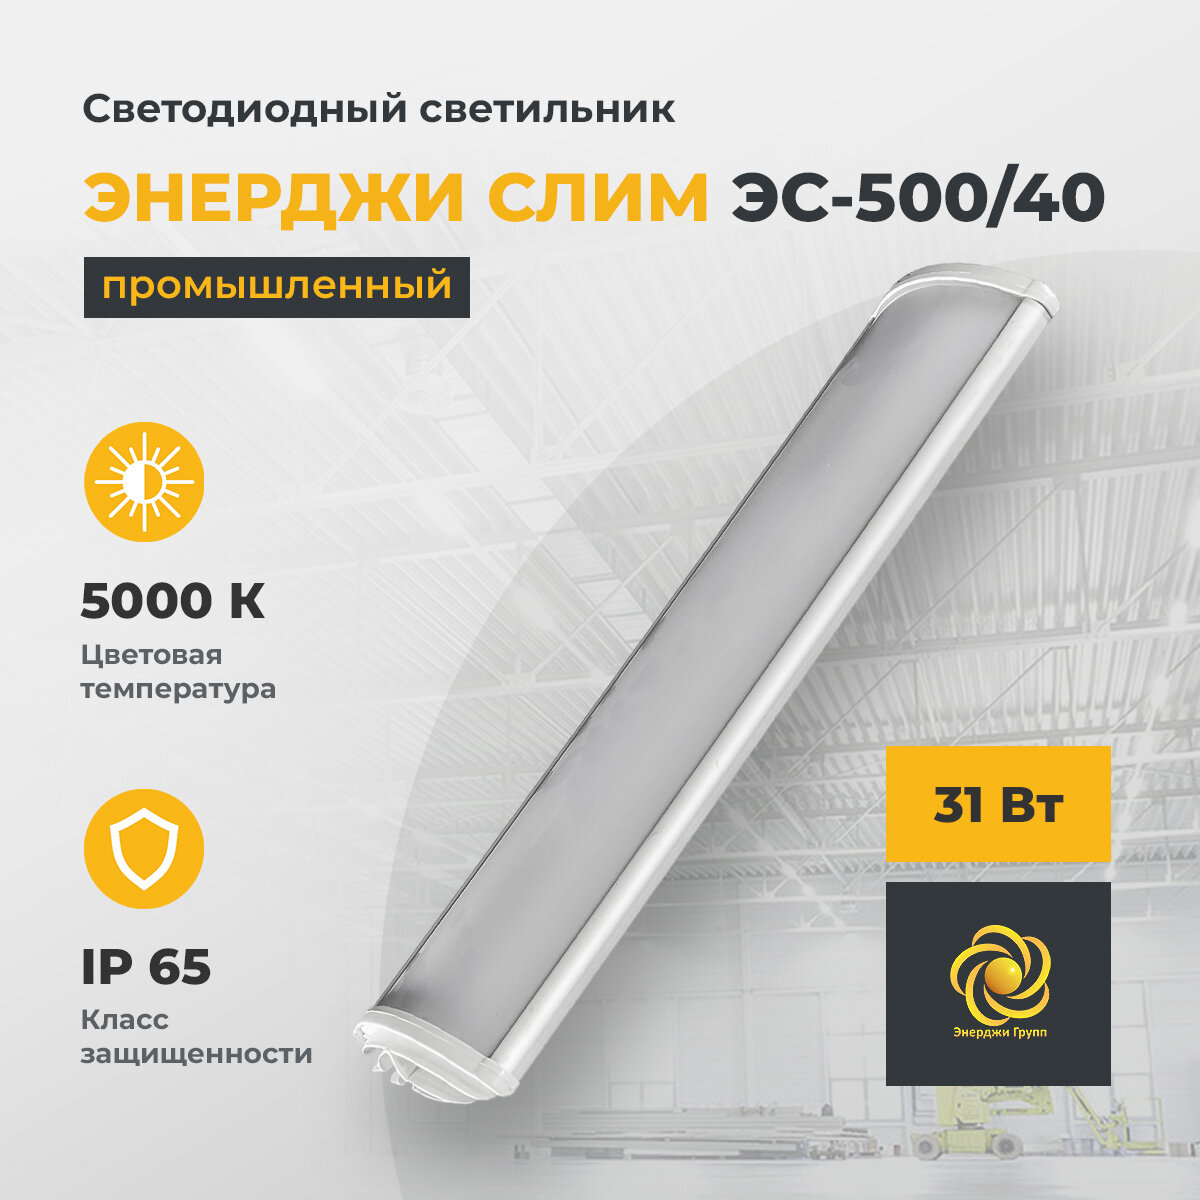 Светодиодный светильник промышленный "энерджи слим" ЭС-500/40, 31 Вт, 5000 К, 3700 Лм